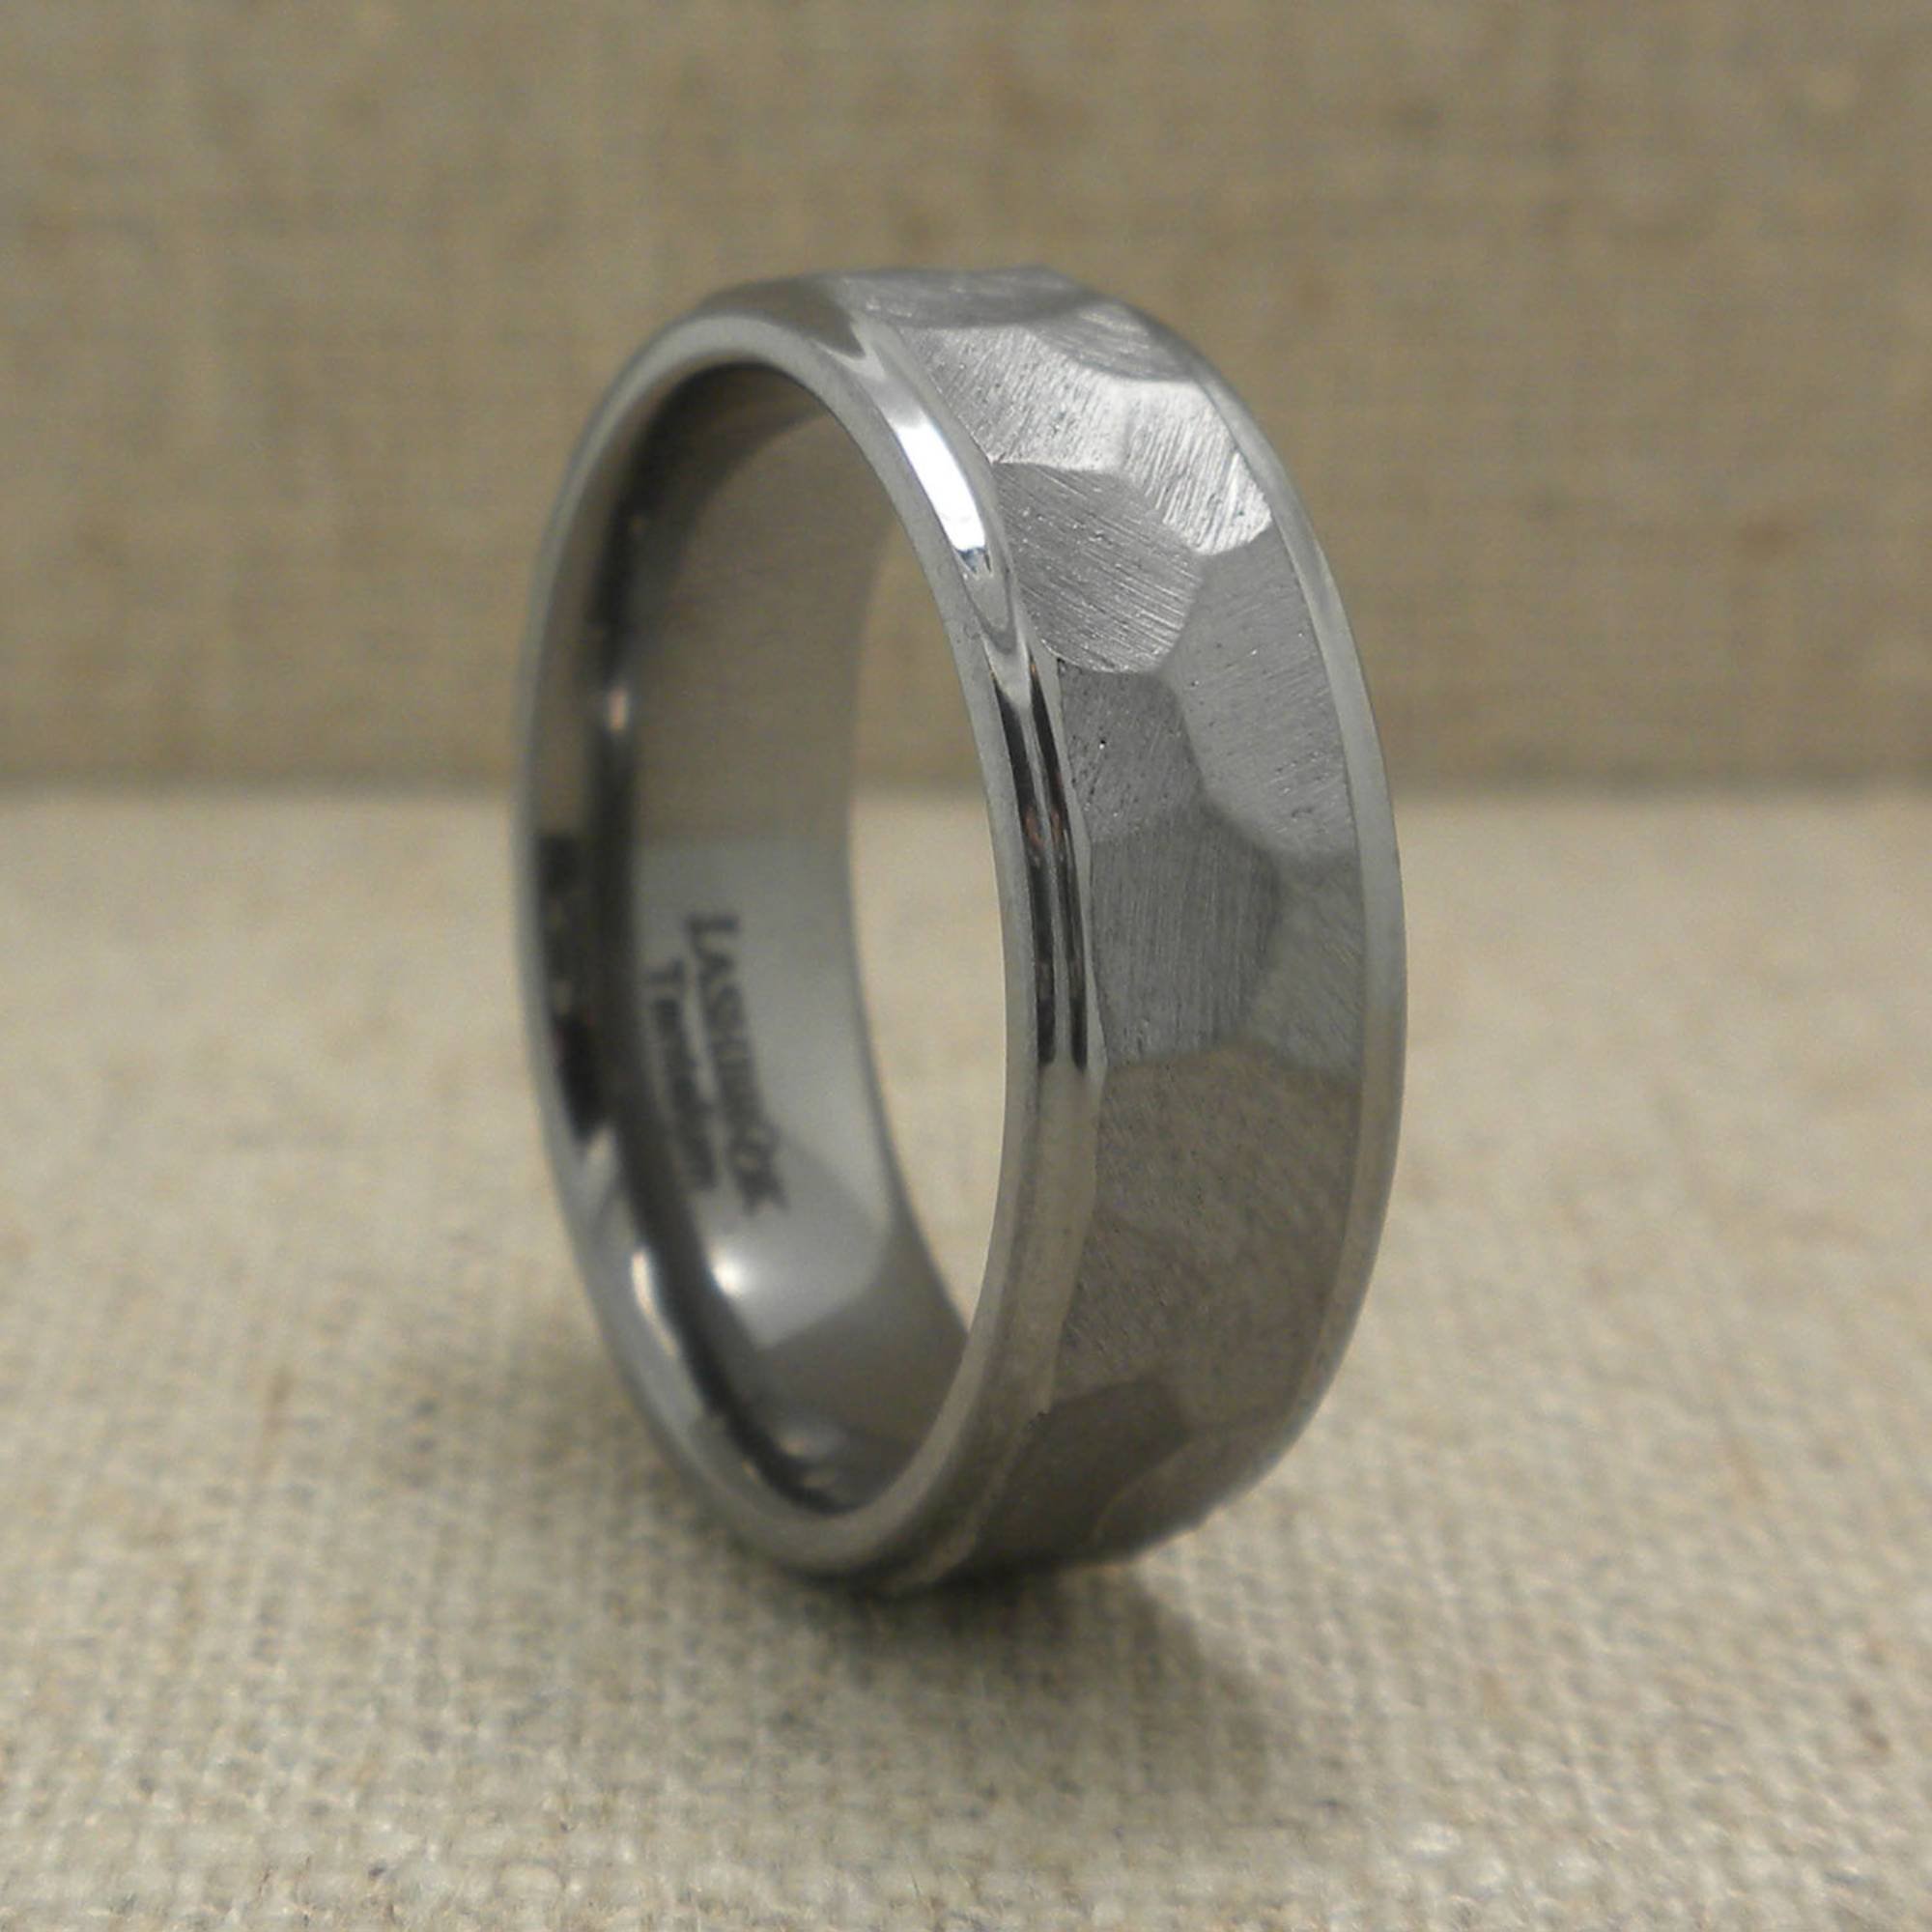 Rock finish Wedding Ring